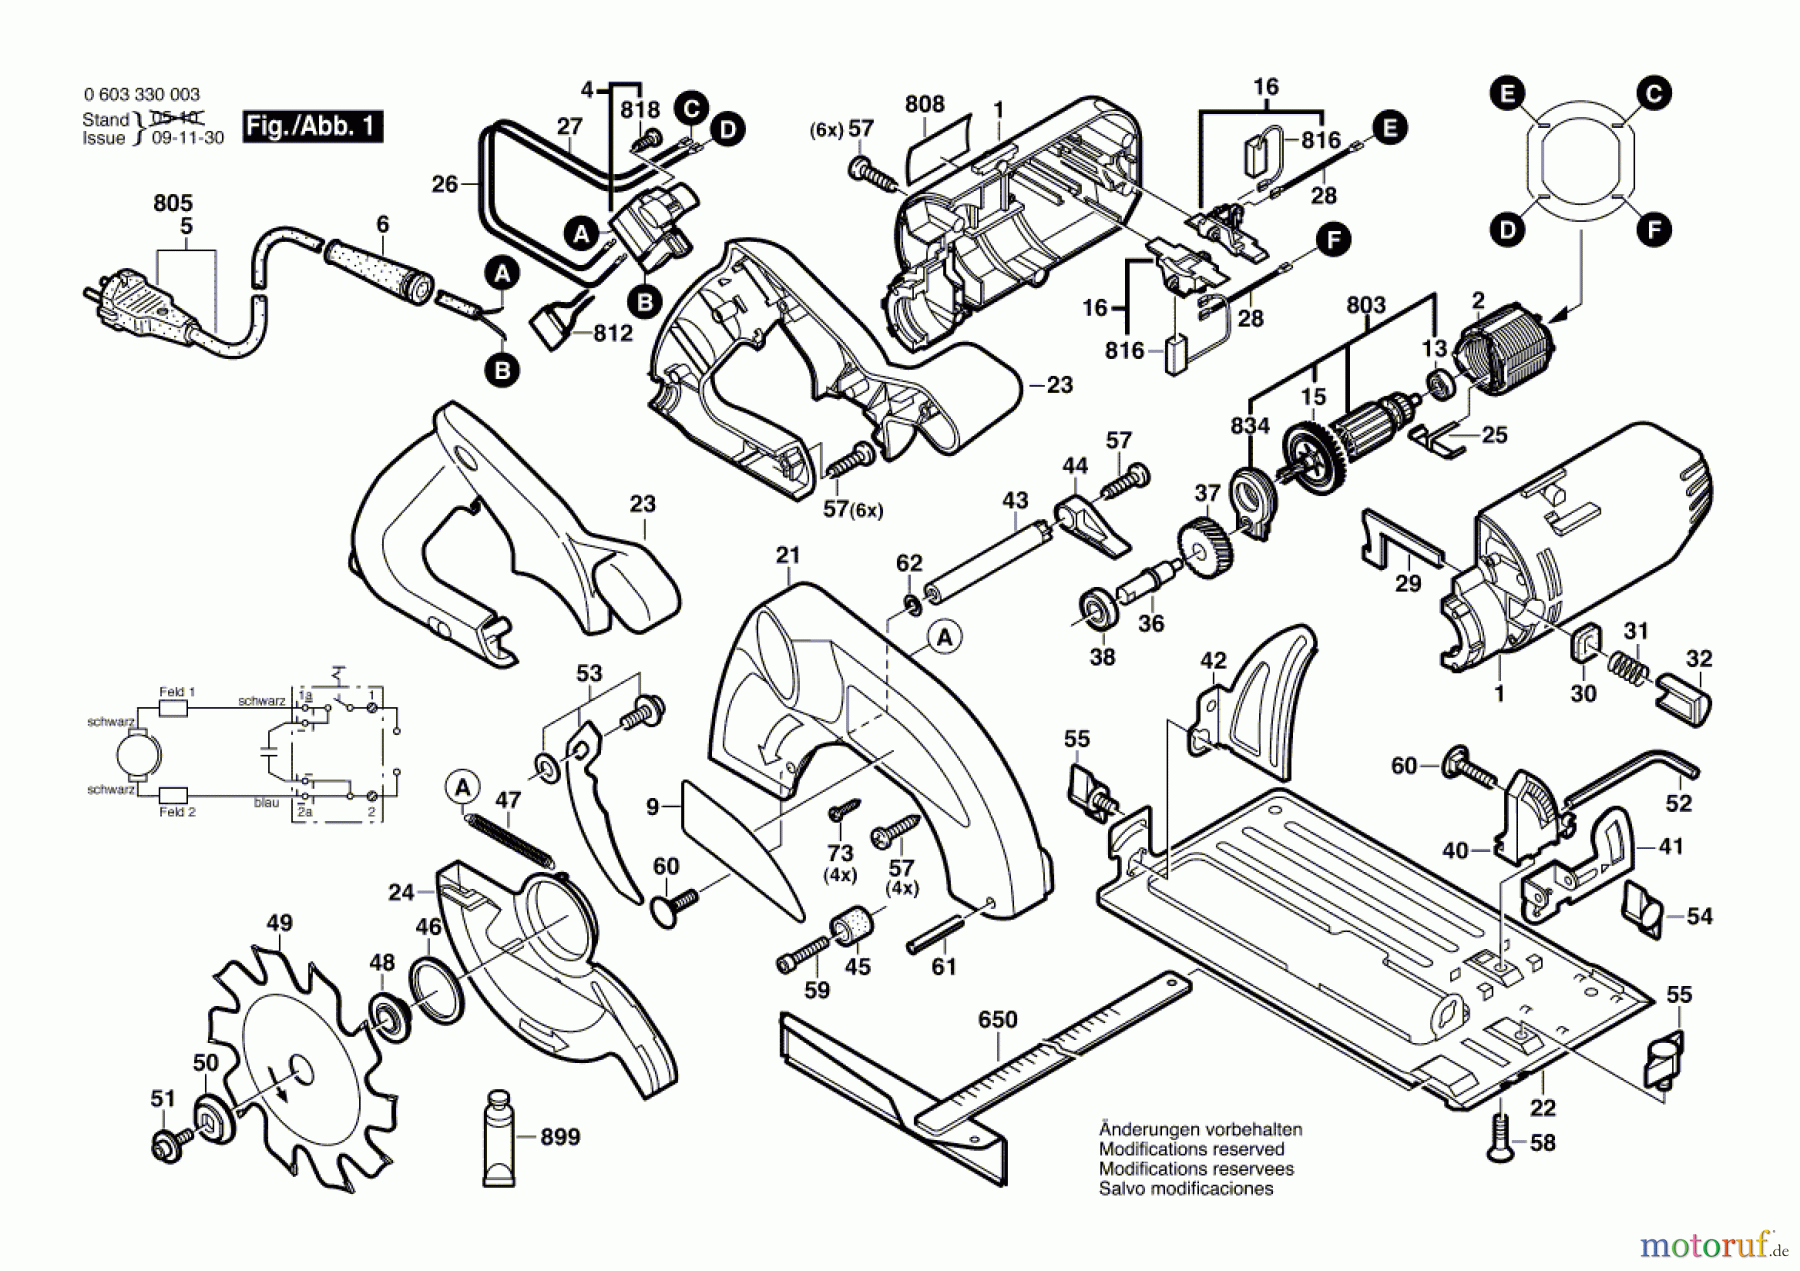  Bosch Werkzeug Handkreissäge PKS 54 Seite 1